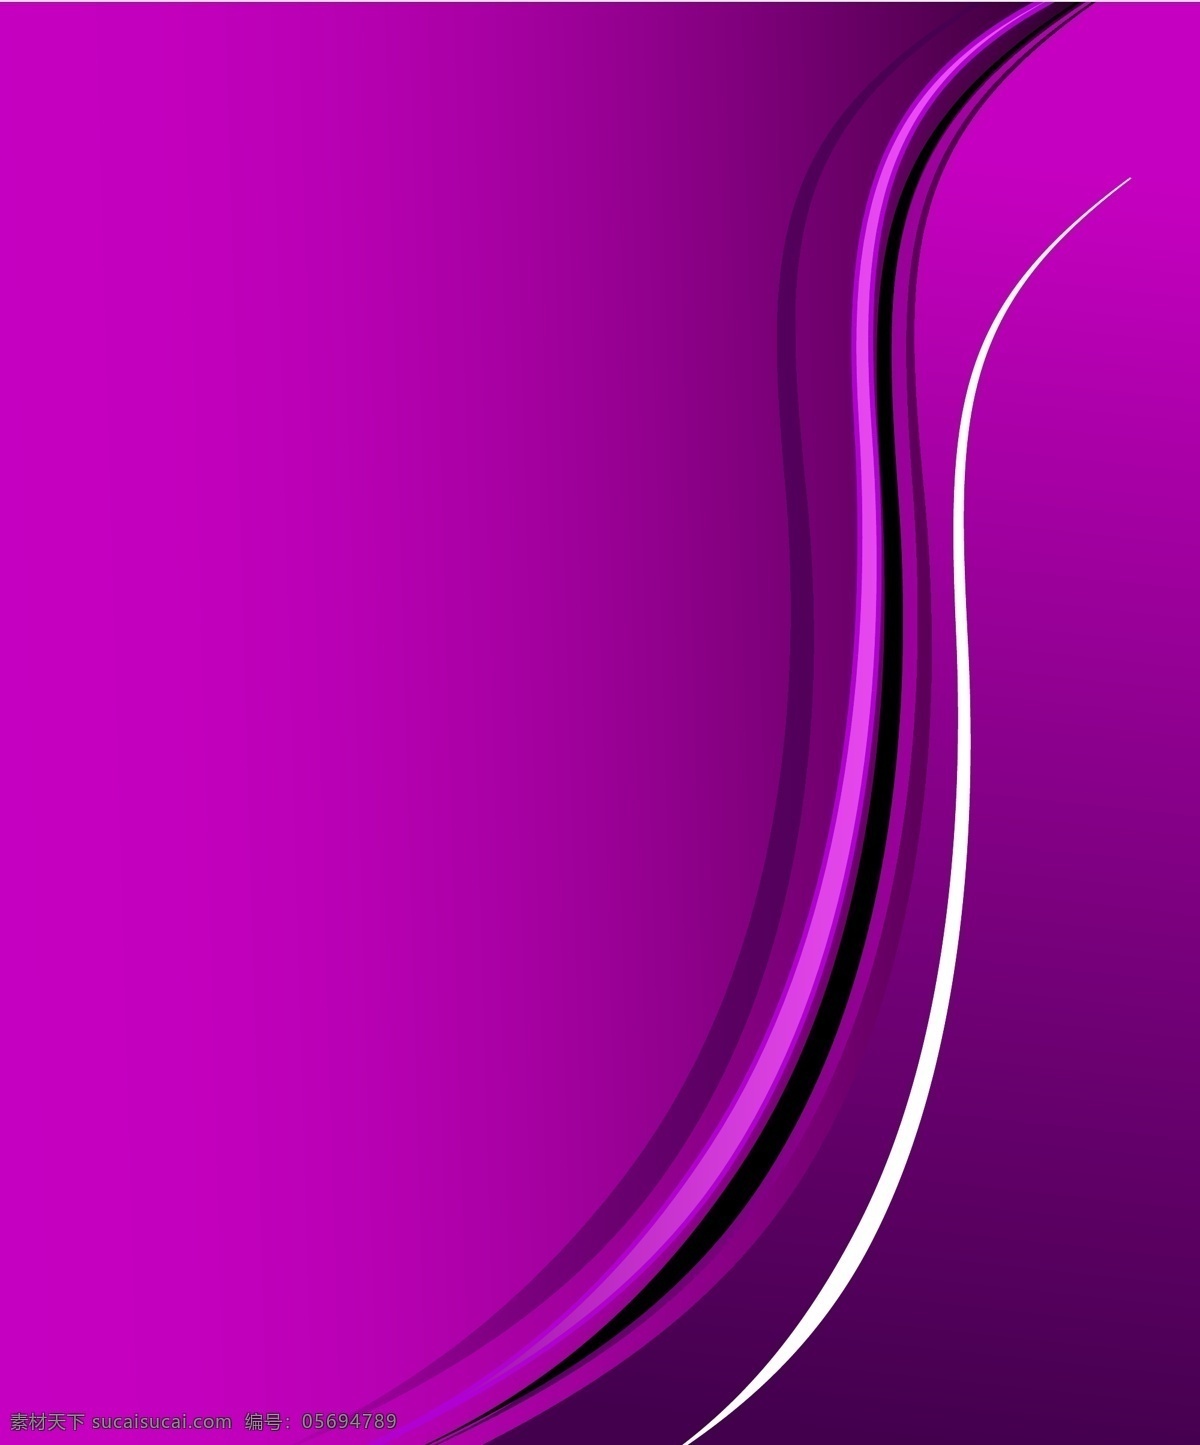 紫色 曲线 背景 矢量 矢量素材 设计素材 背景素材